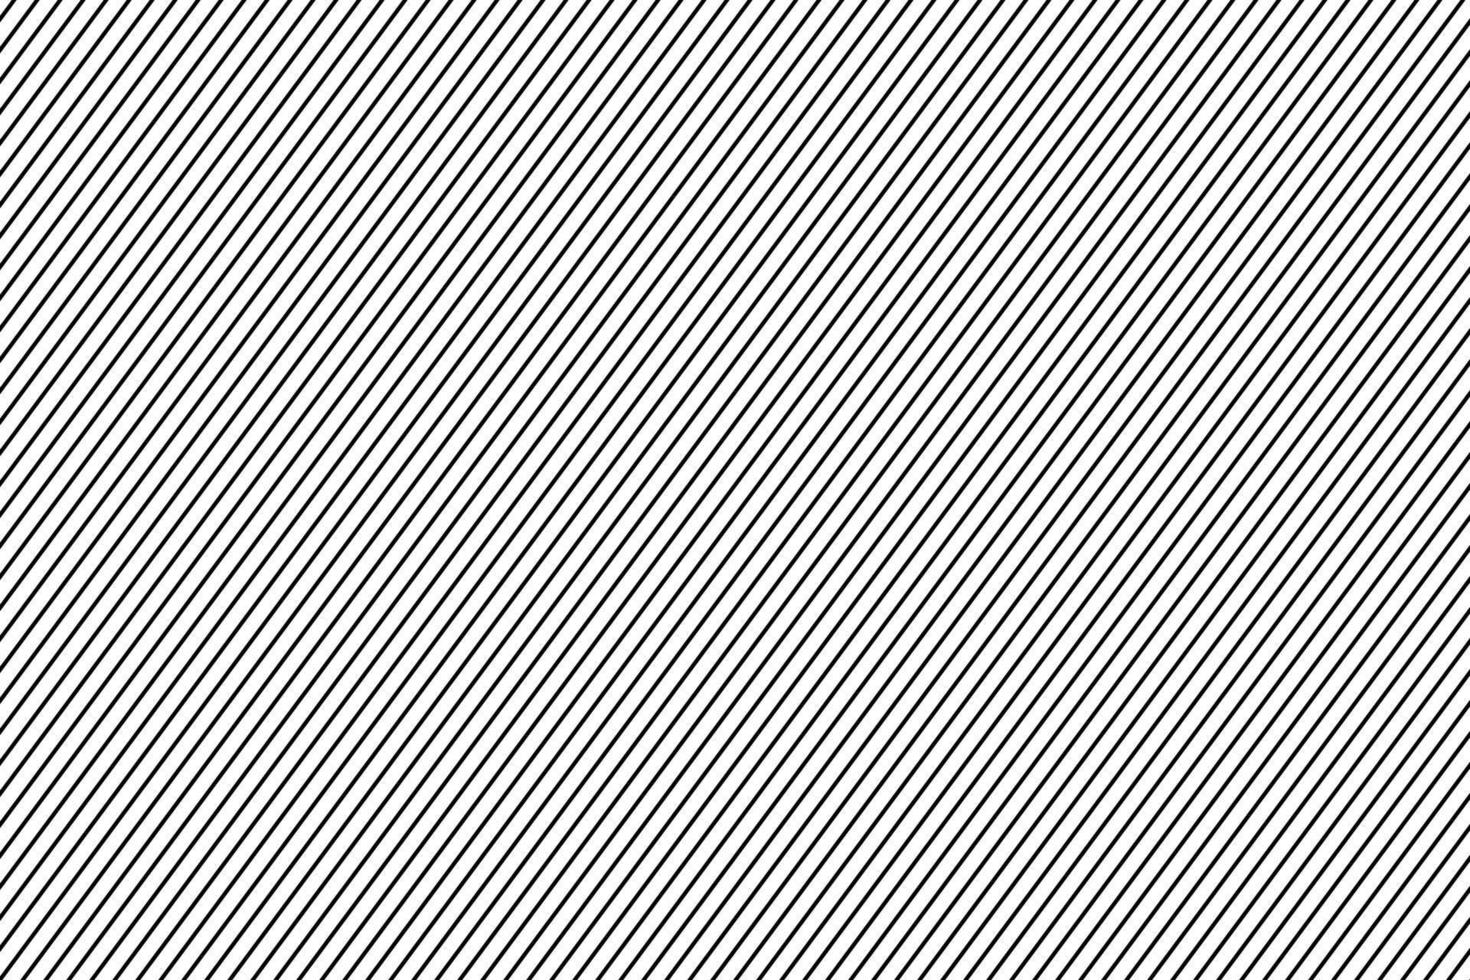 zwart diagonaal streep Rechtdoor lijnen patroon. vector